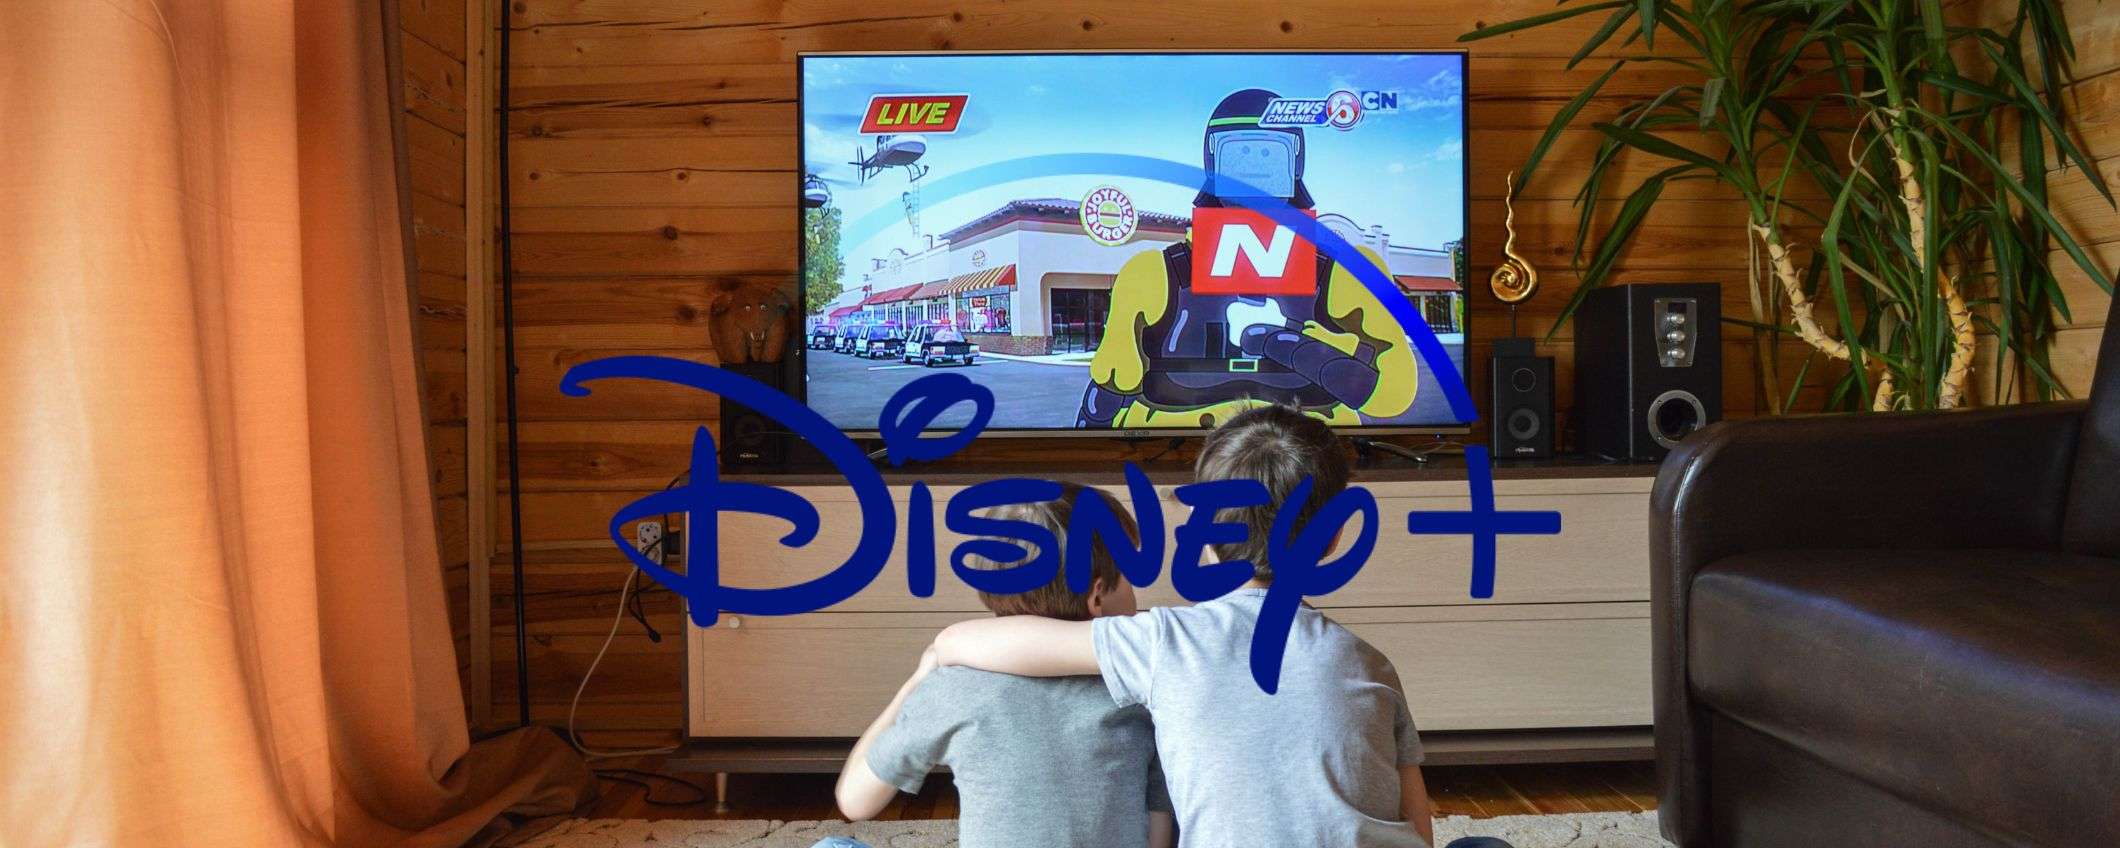 Disney+, il meglio dell'intrattenimento oggi a casa tua a 1,99€